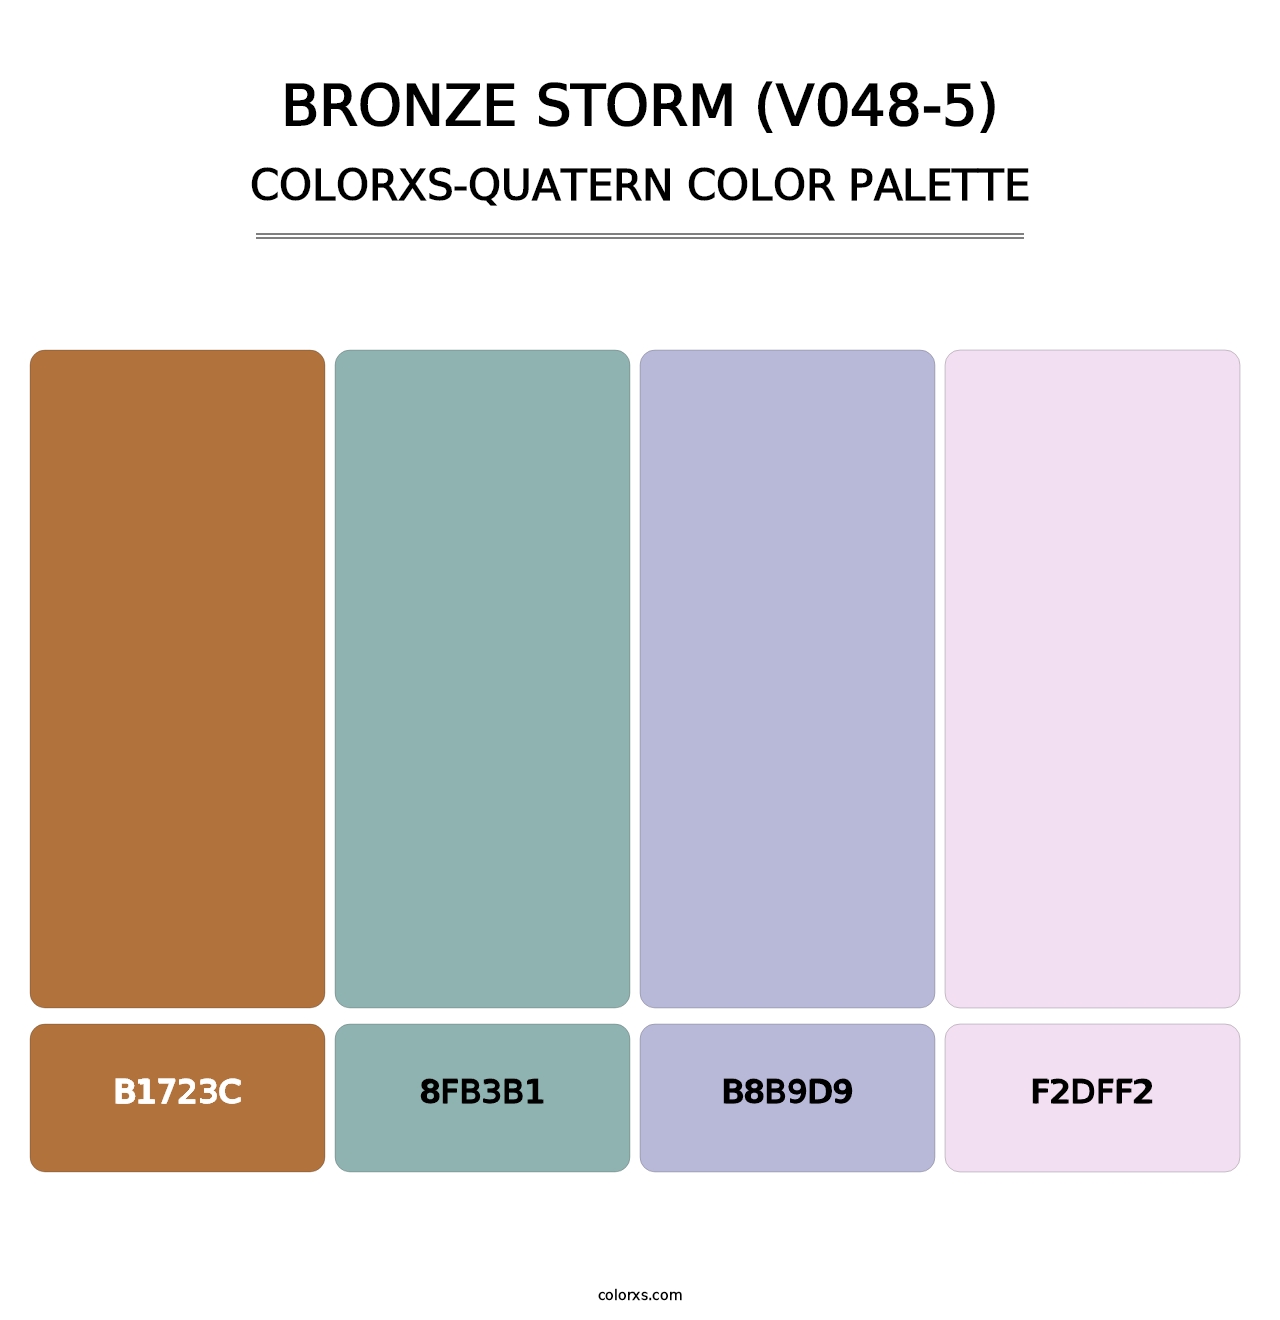 Bronze Storm (V048-5) - Colorxs Quatern Palette